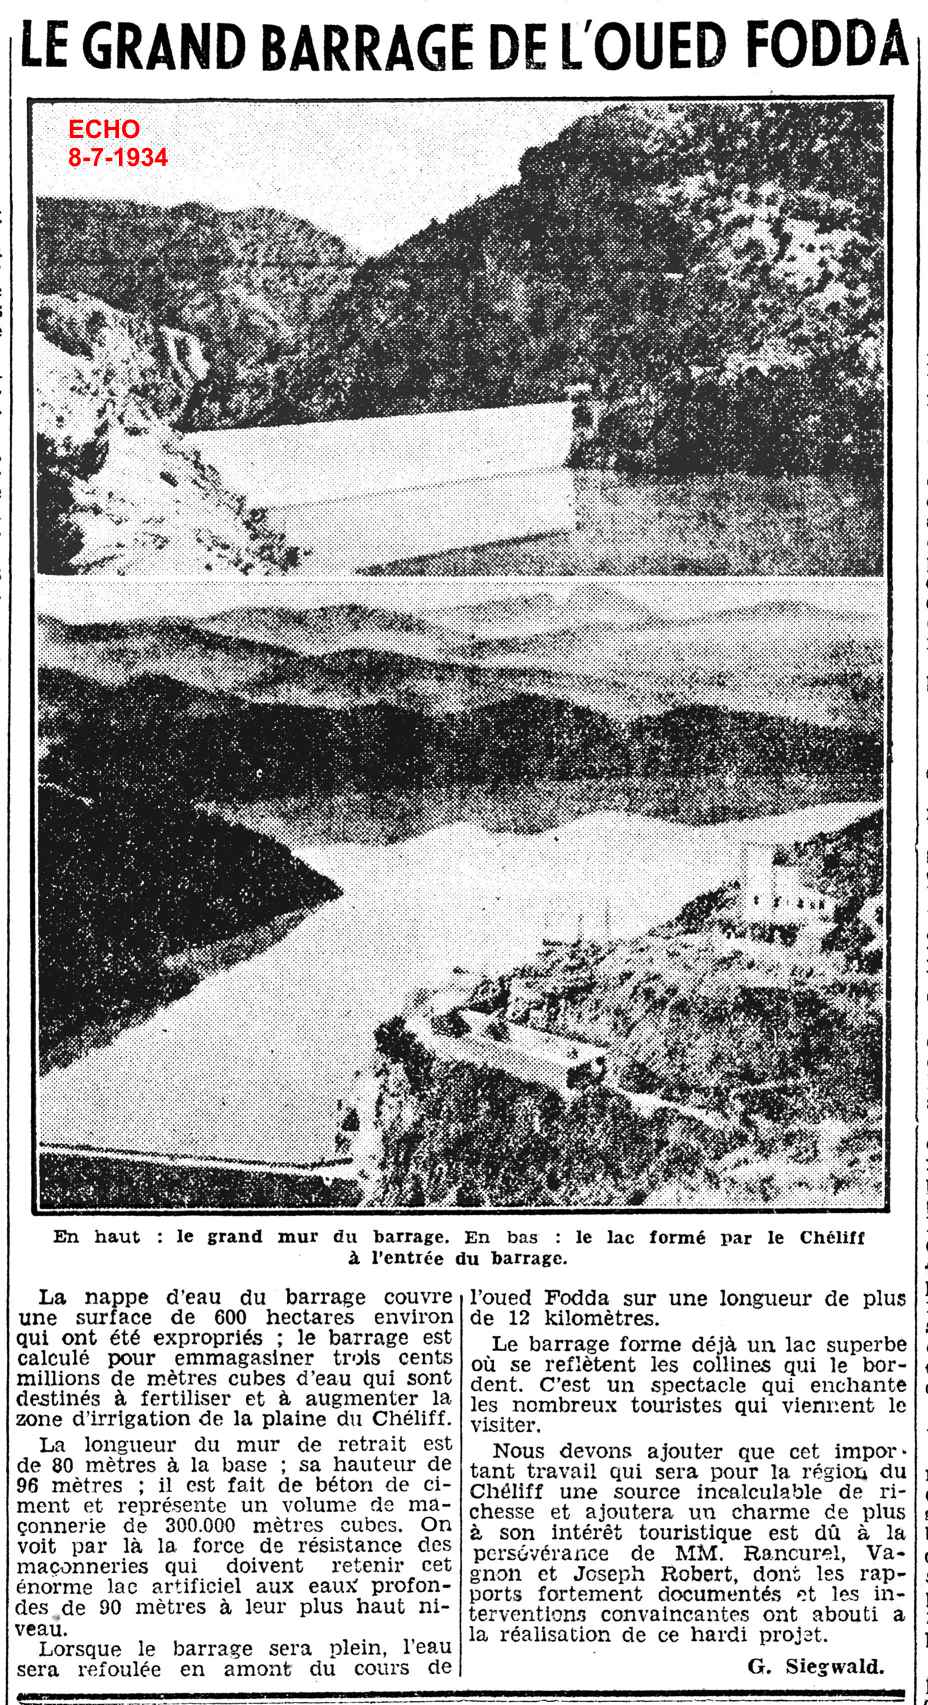 Extrait de l'Echo d'Alger du 11-1-1924 - transmis par Francis Rambert